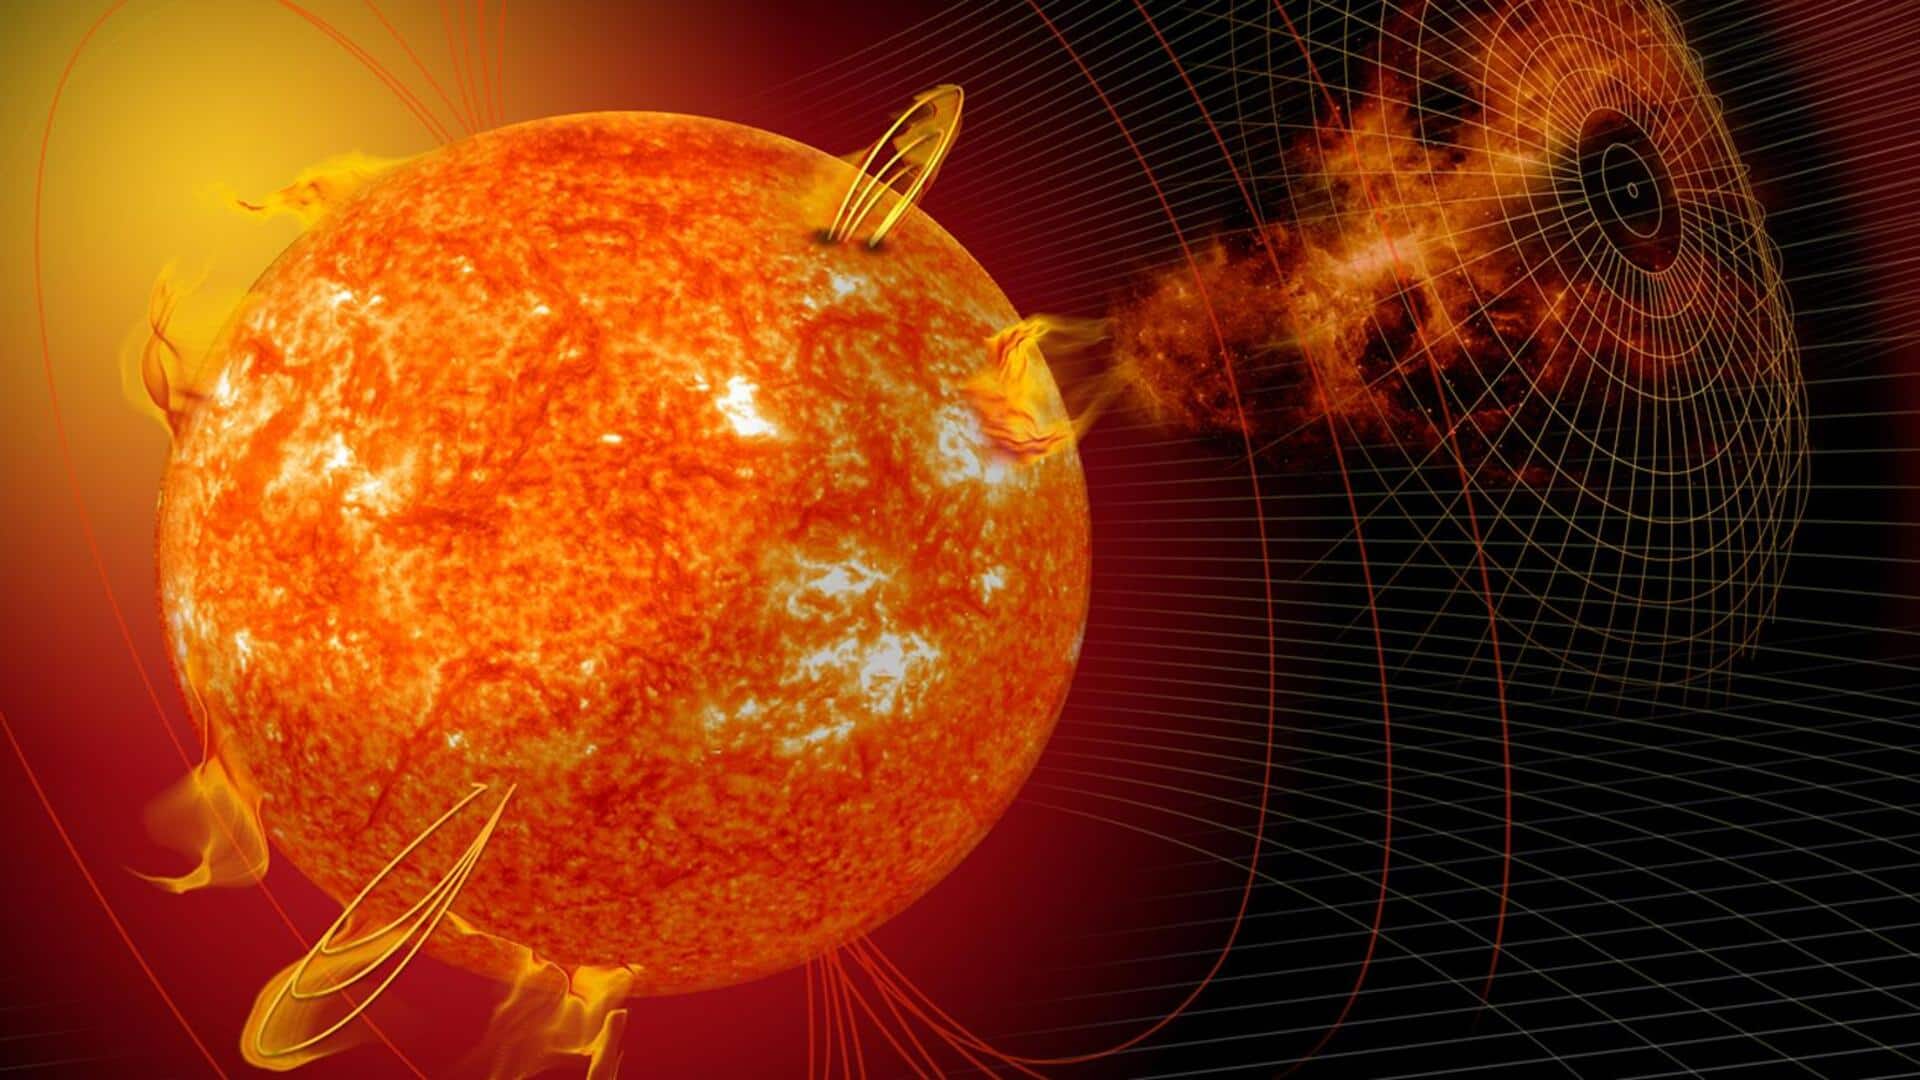 नासा ने जारी किया अलर्ट, कल पृथ्वी पर आ सकता है सौर तूफान